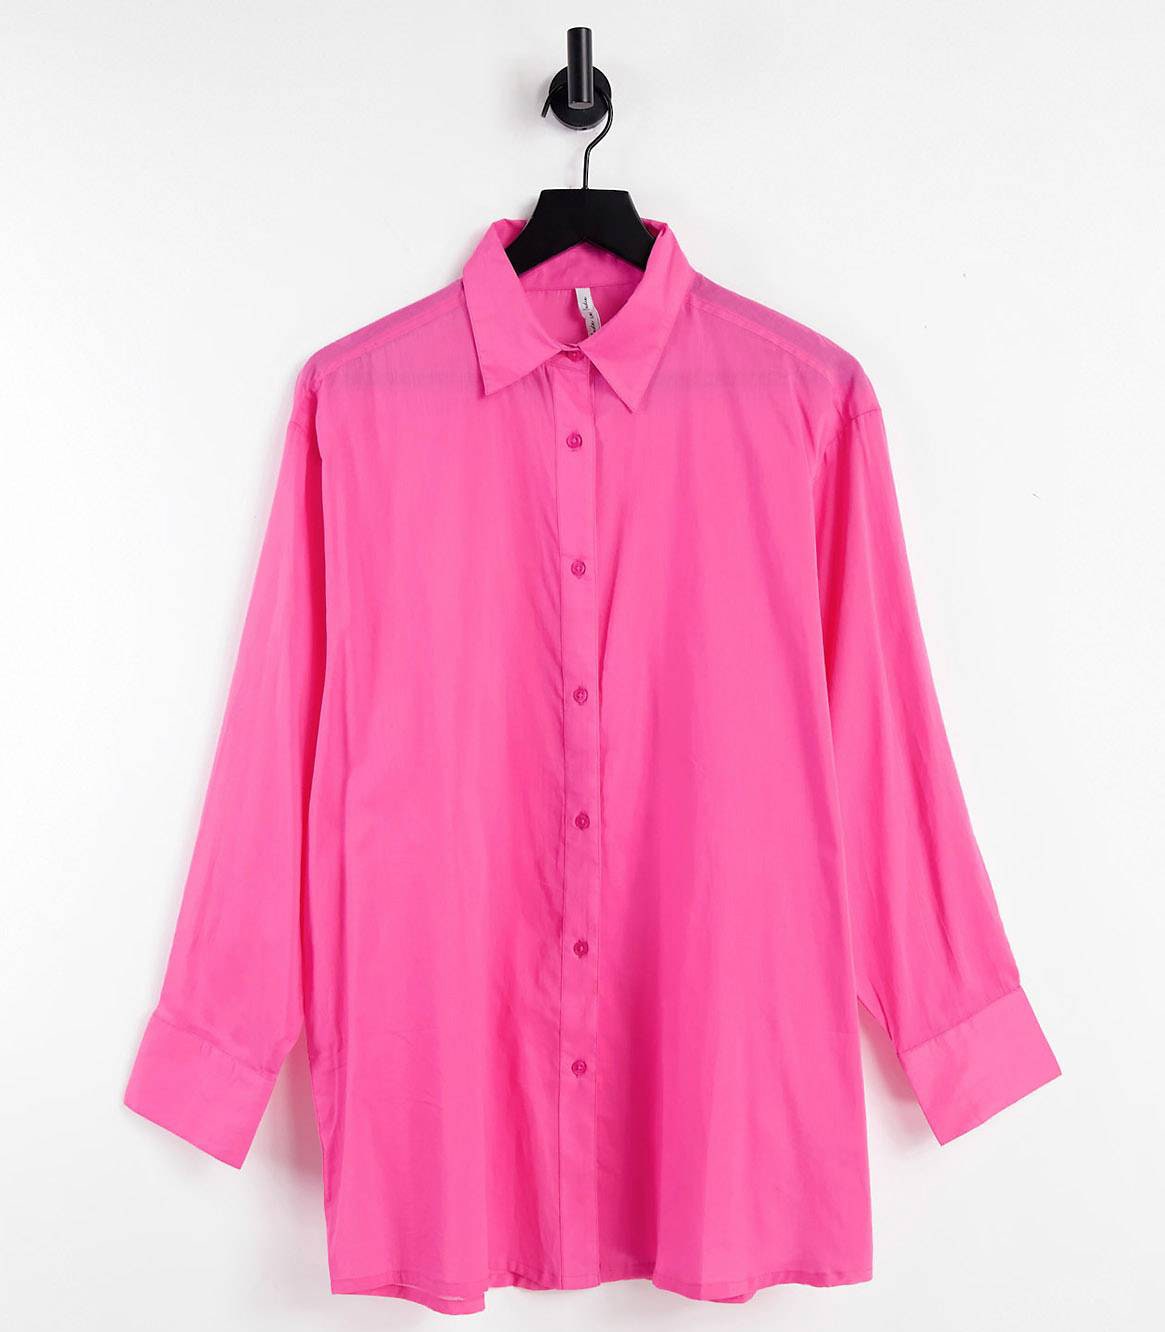 Привет из нулевых Рианна возвращает моду на миниюбки и яркие рубашки